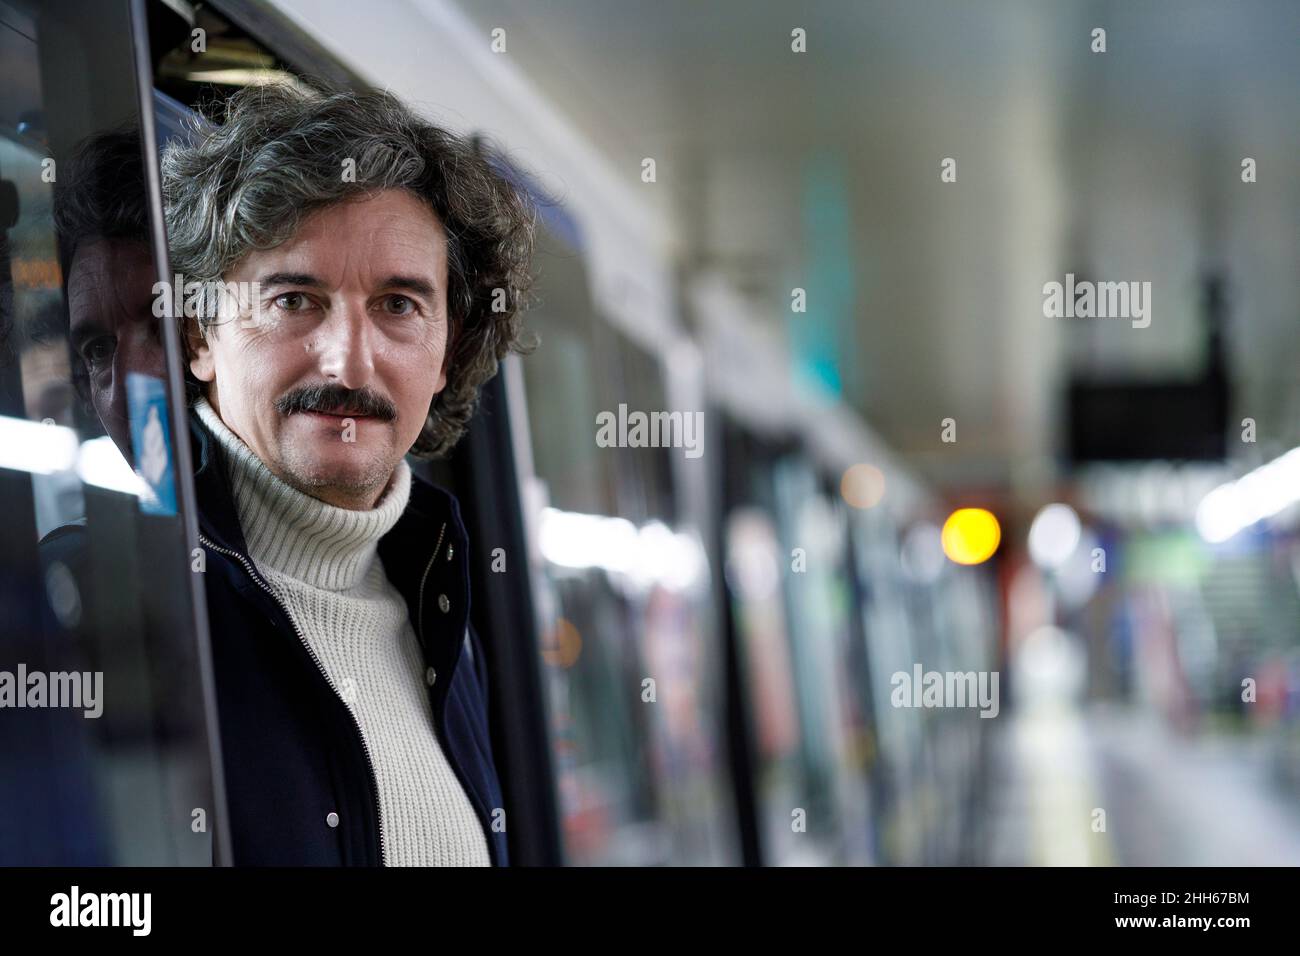 Man disembarking from subway train at station Stock Photo